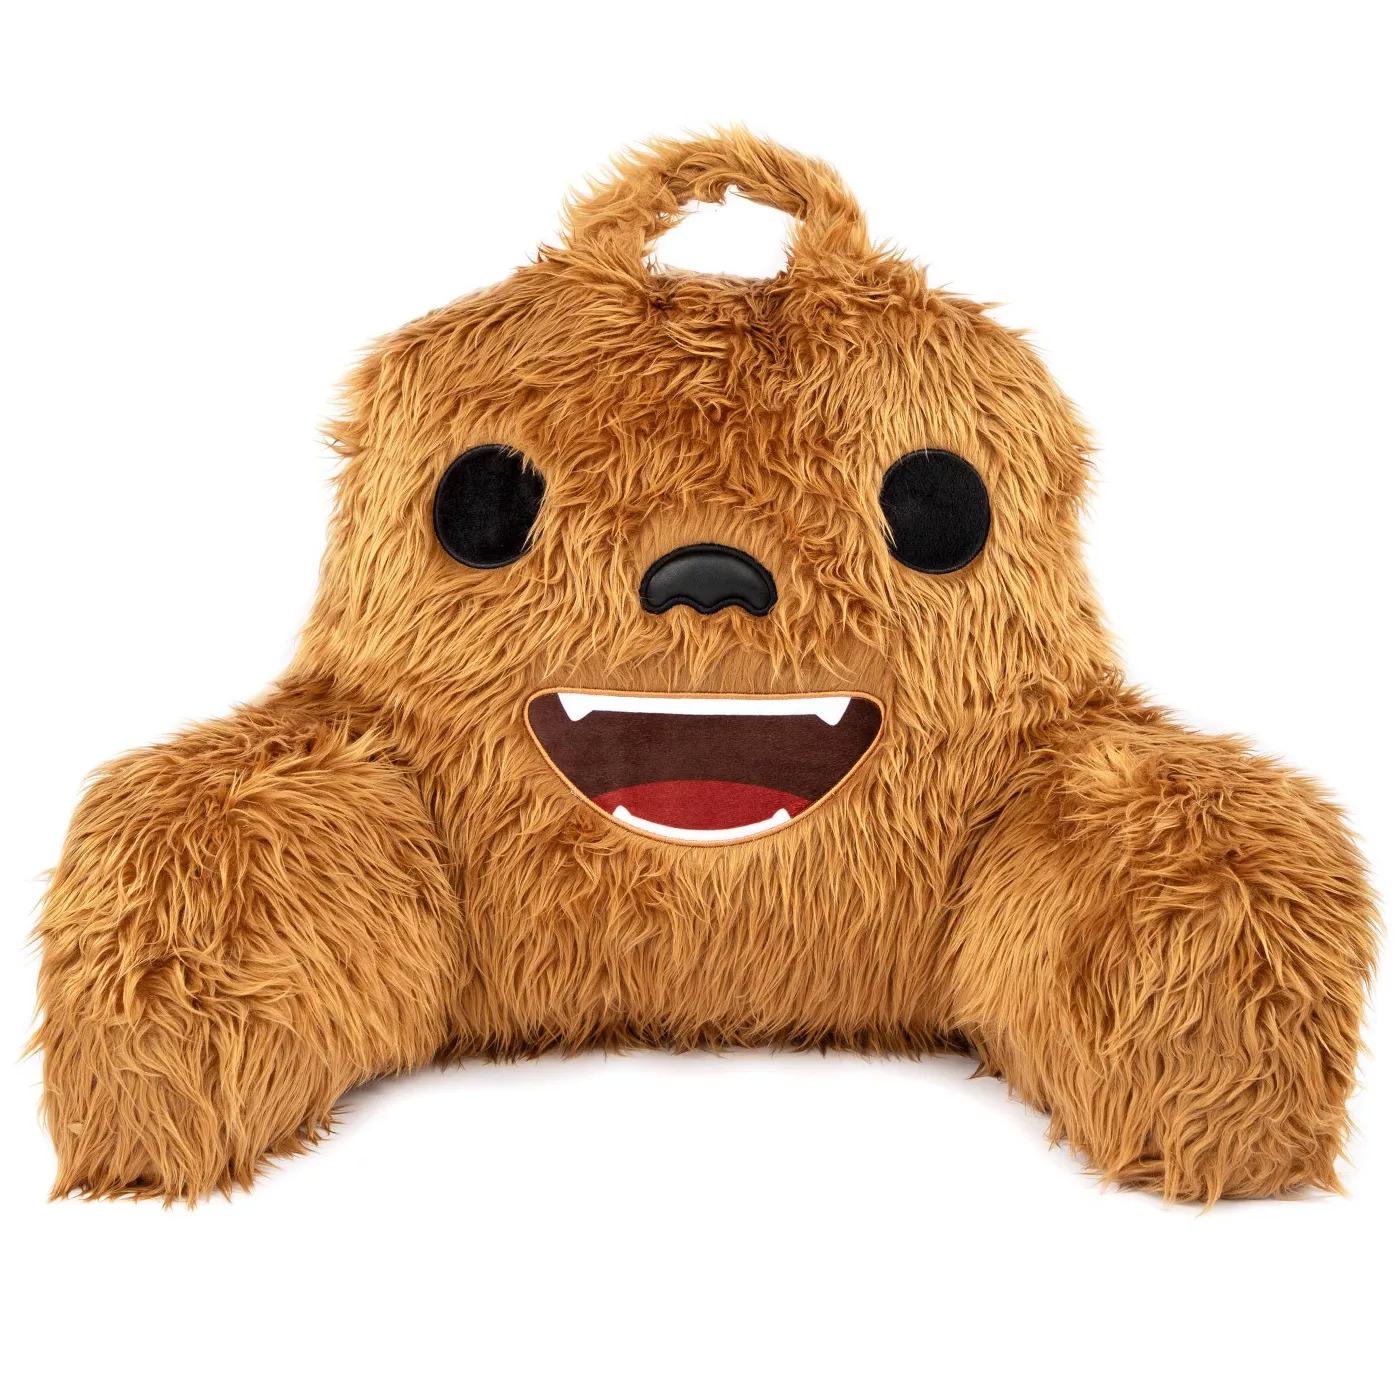 Star Wars Bedrest Pillow Chewbacca for $17.49